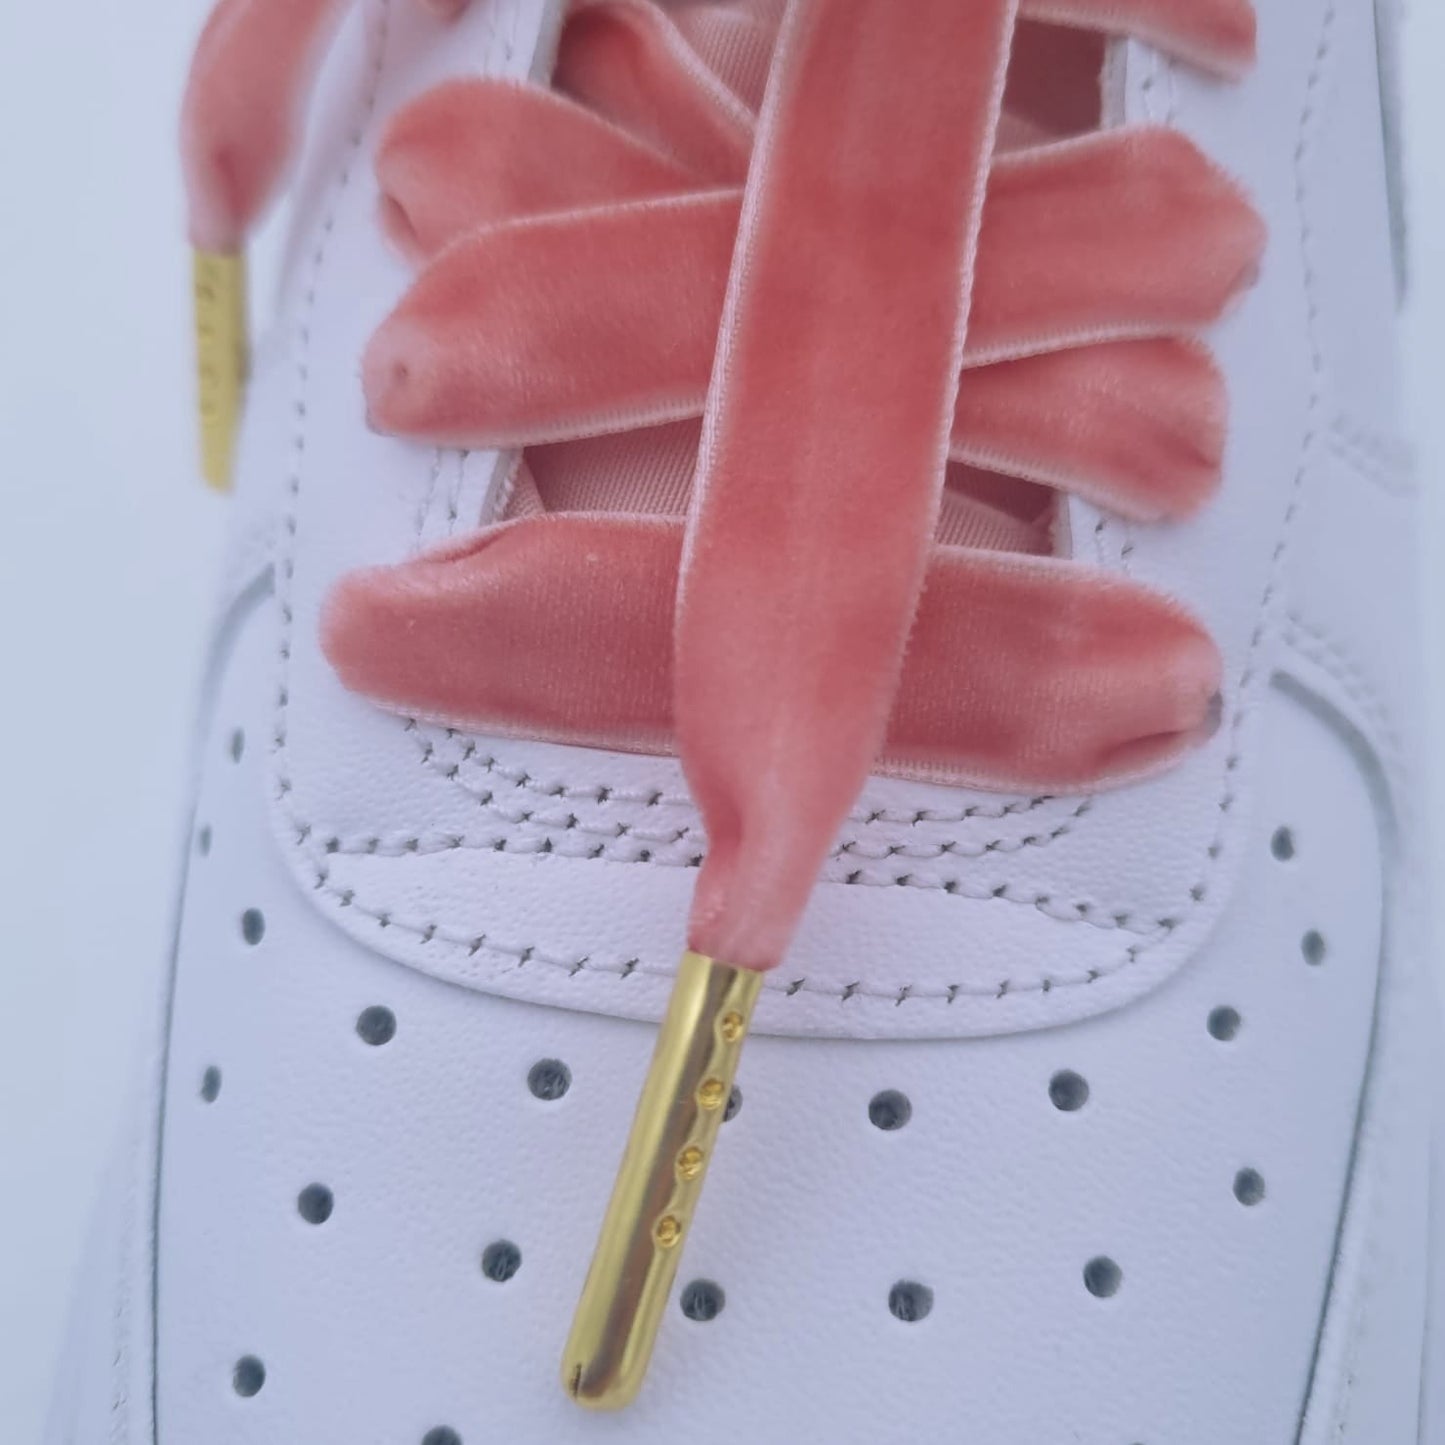 Samt Schnürsenkel in rosa auf weißen AF1 Sneakern.